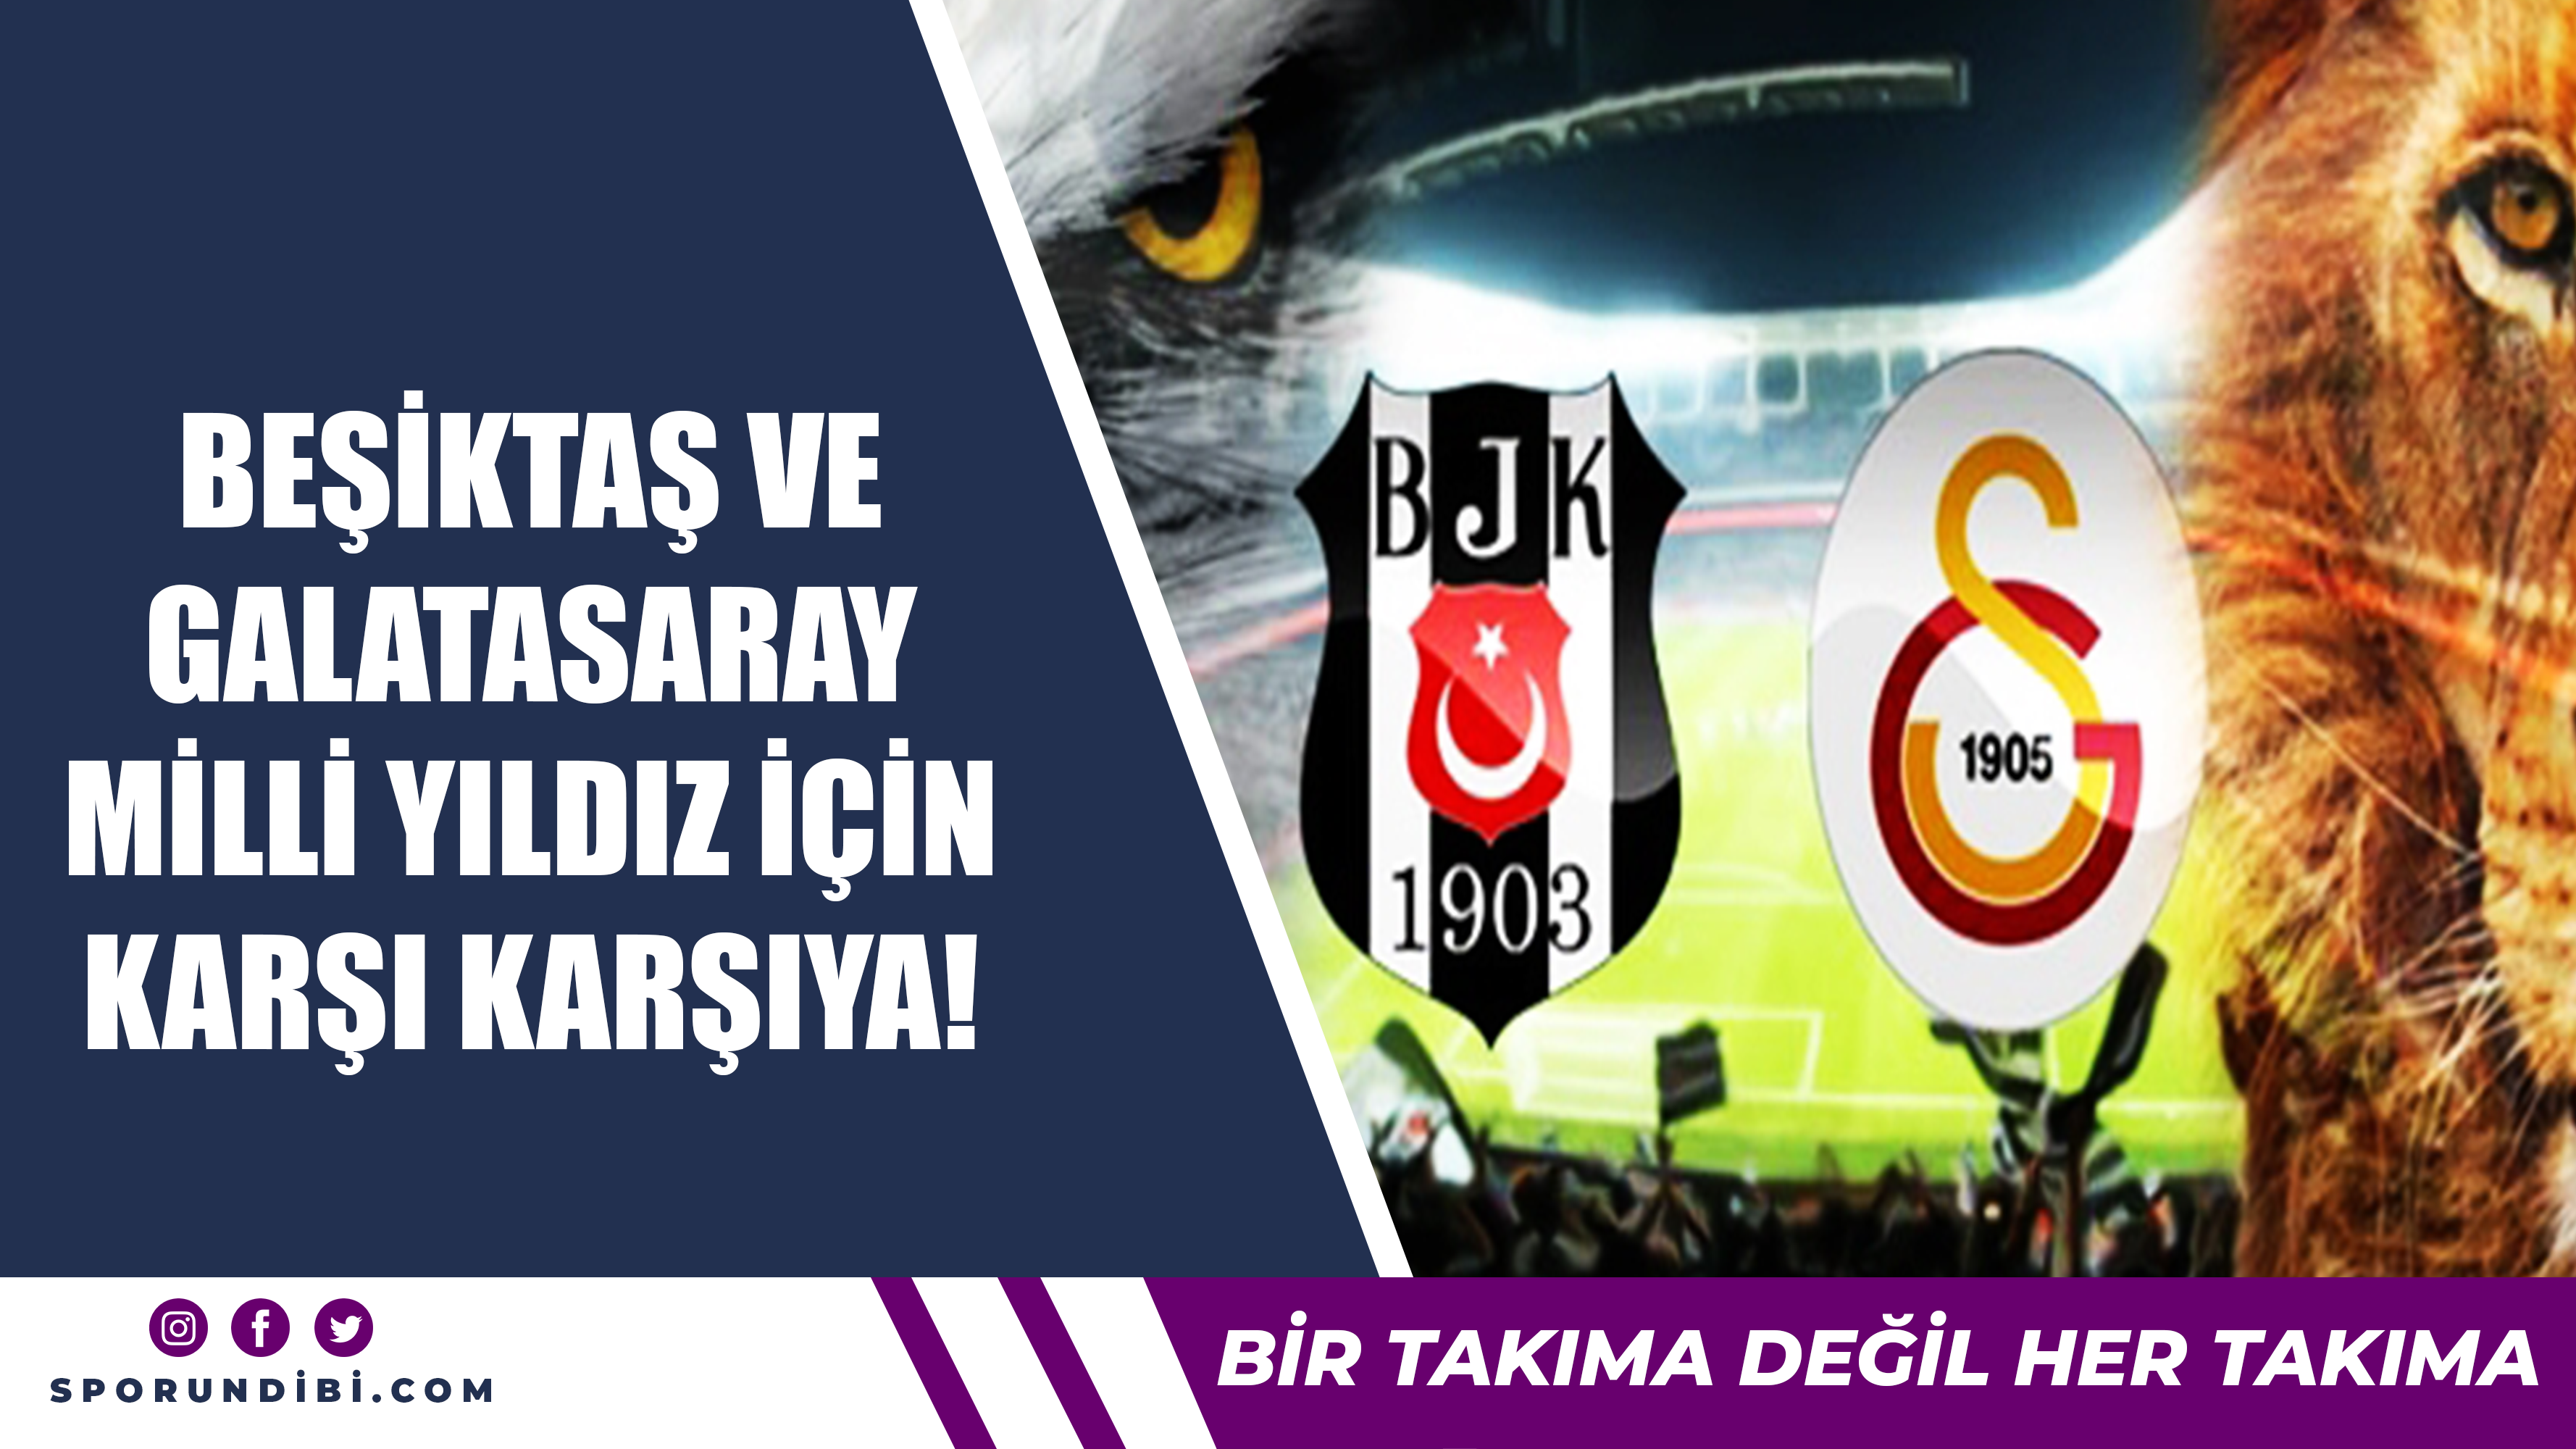 Beşiktaş ve Galatasaray milli yıldız için karşı karşıya!